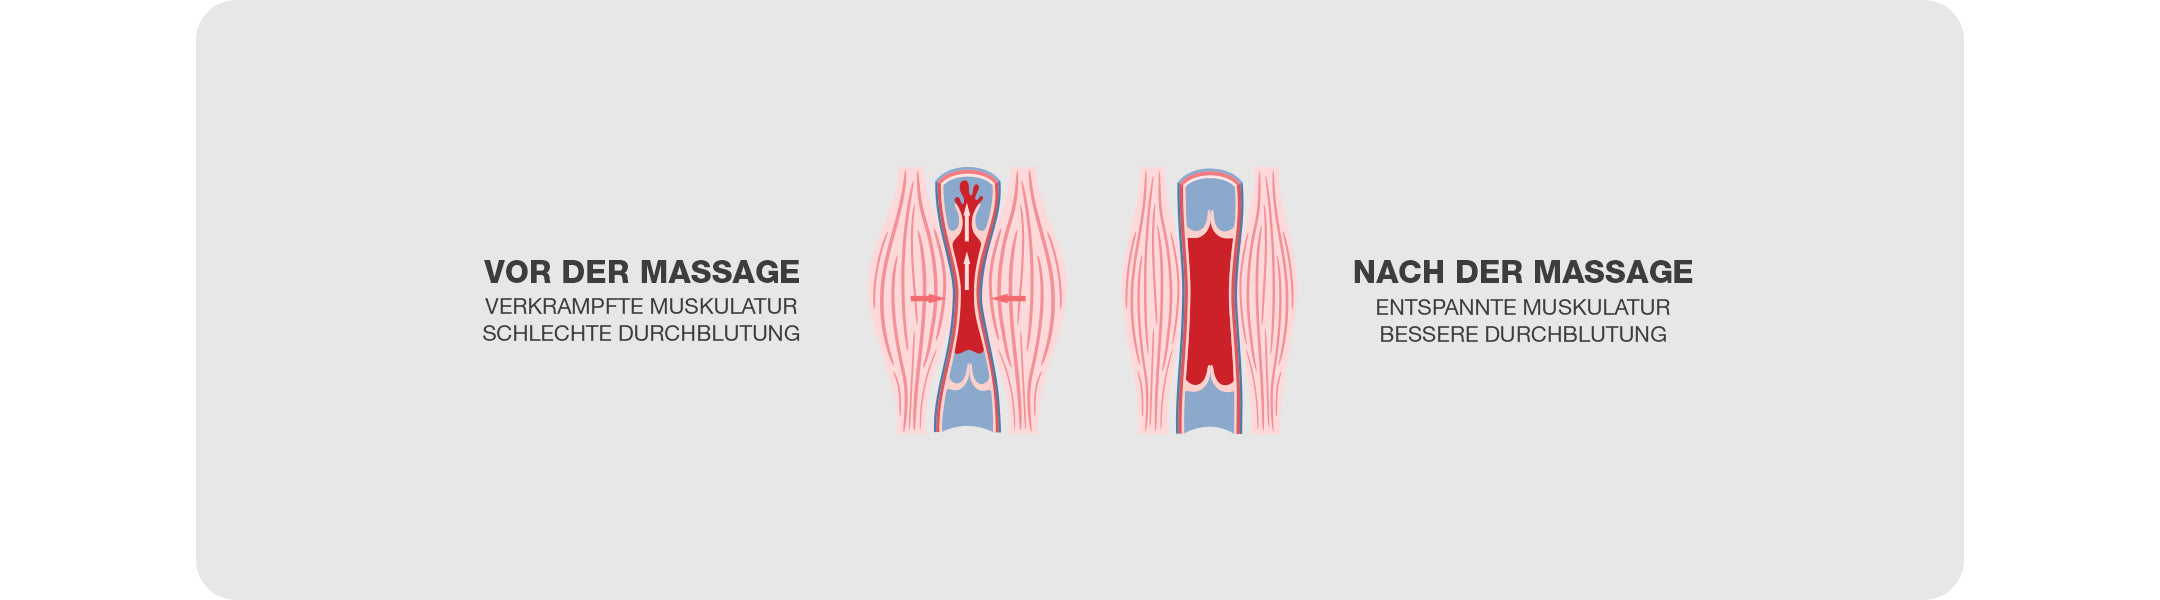 Muskeln vor und nach der Massage mit dem Premium Nackenmassagegerät in Schwarz